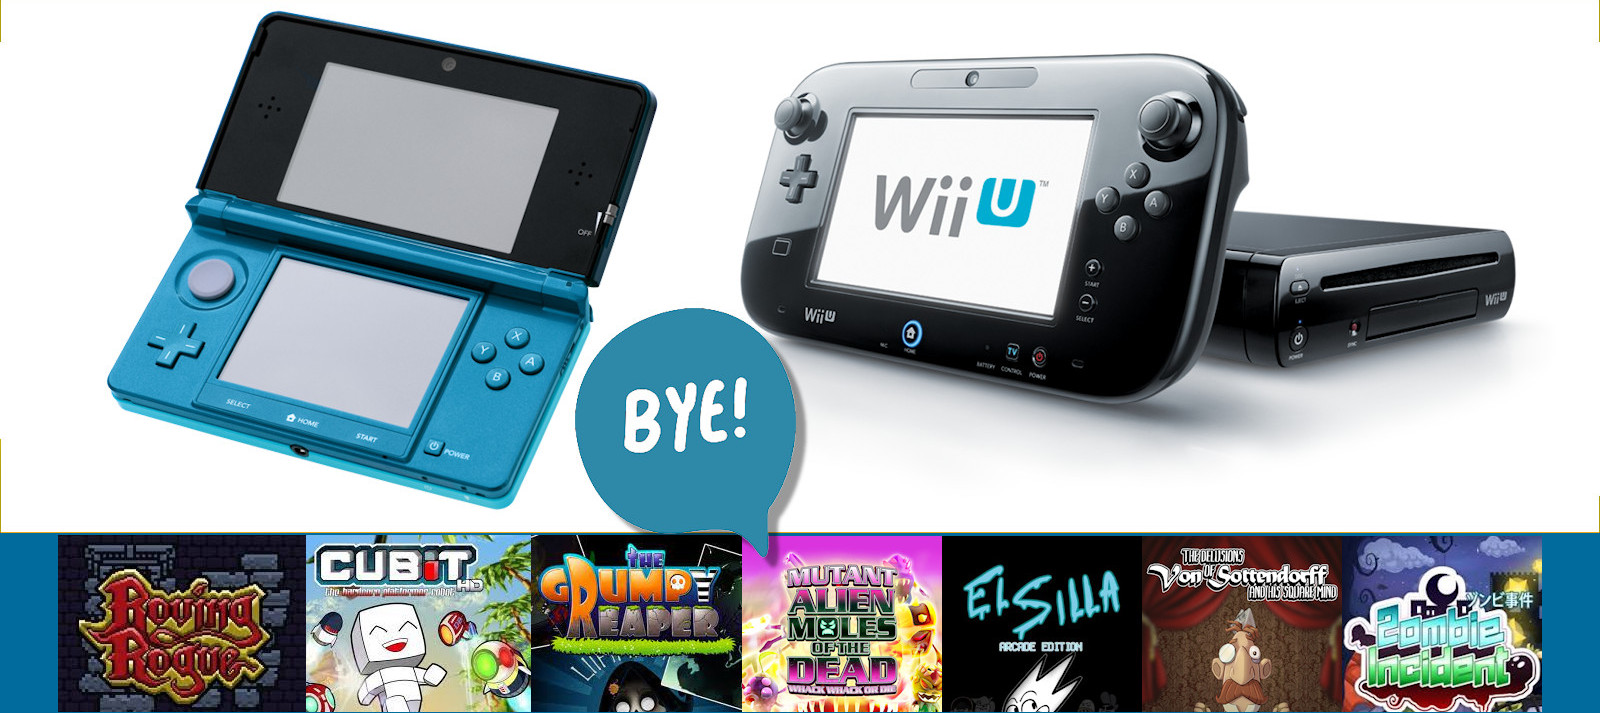 analizar testigo en progreso Los juegos españoles que desaparecerán con Wii U y 3DS – DeVuego Blog